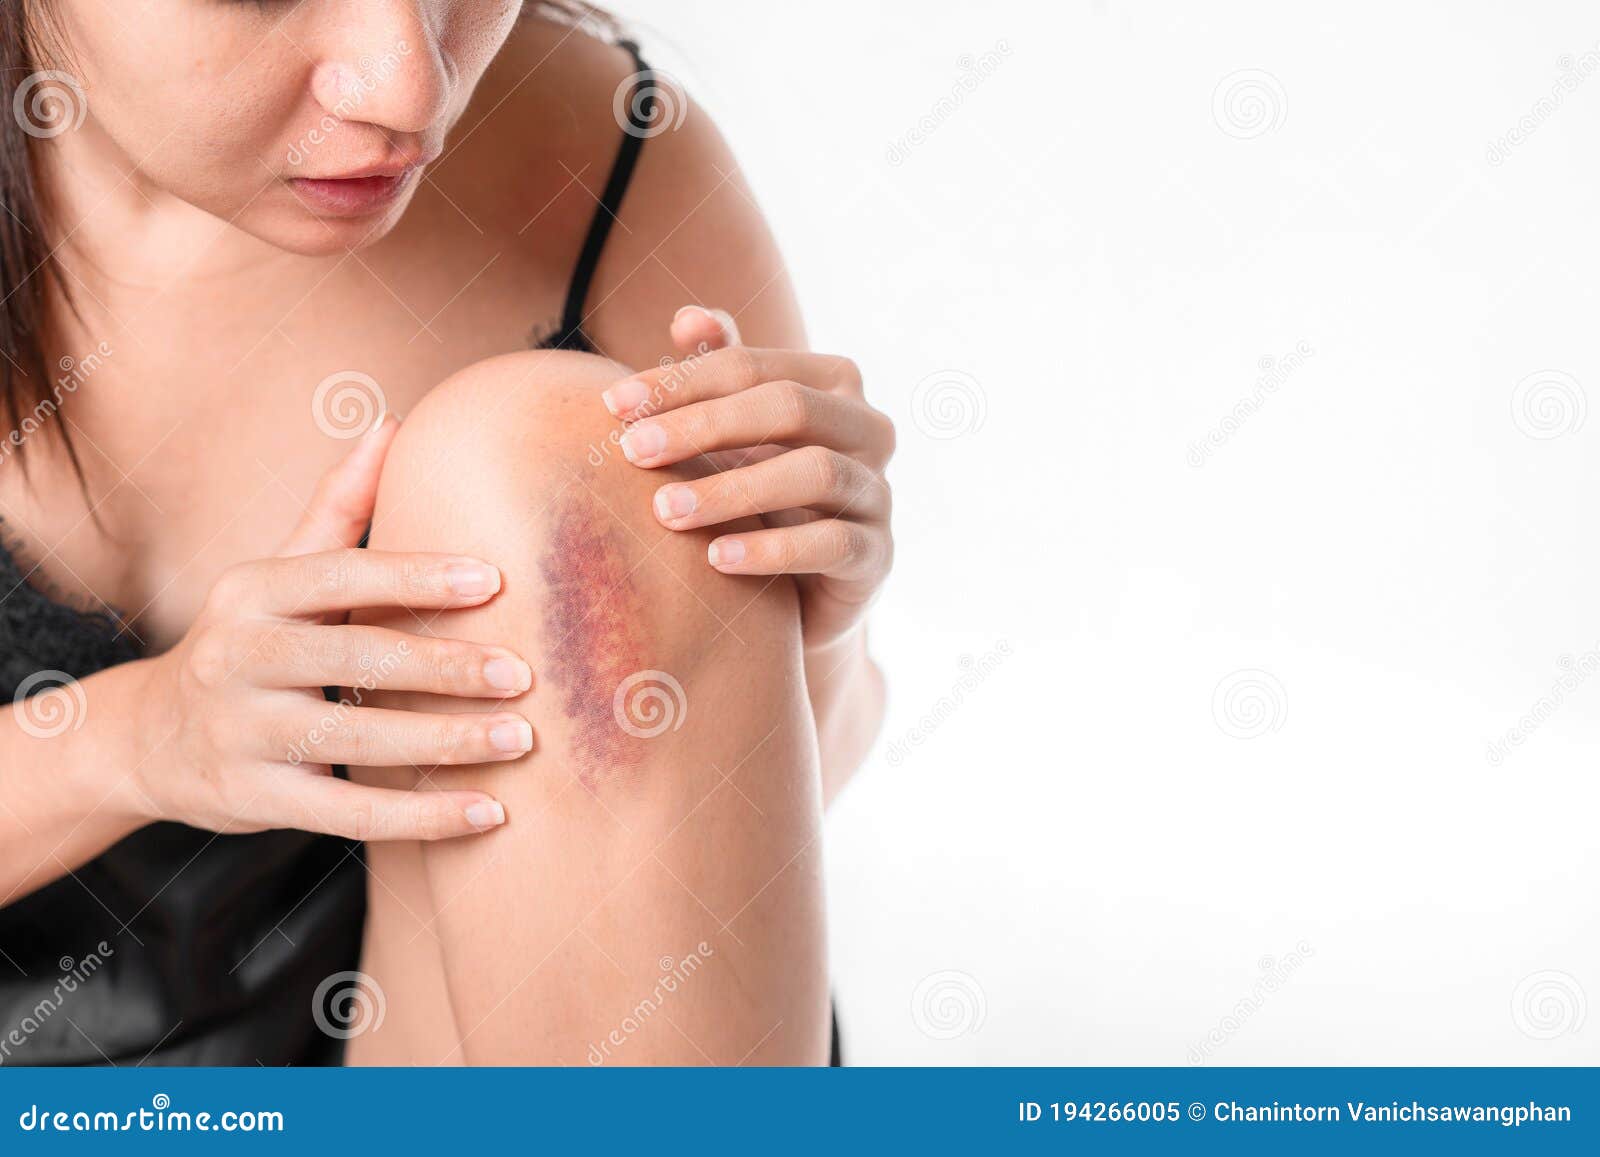 varicoza bruise photo